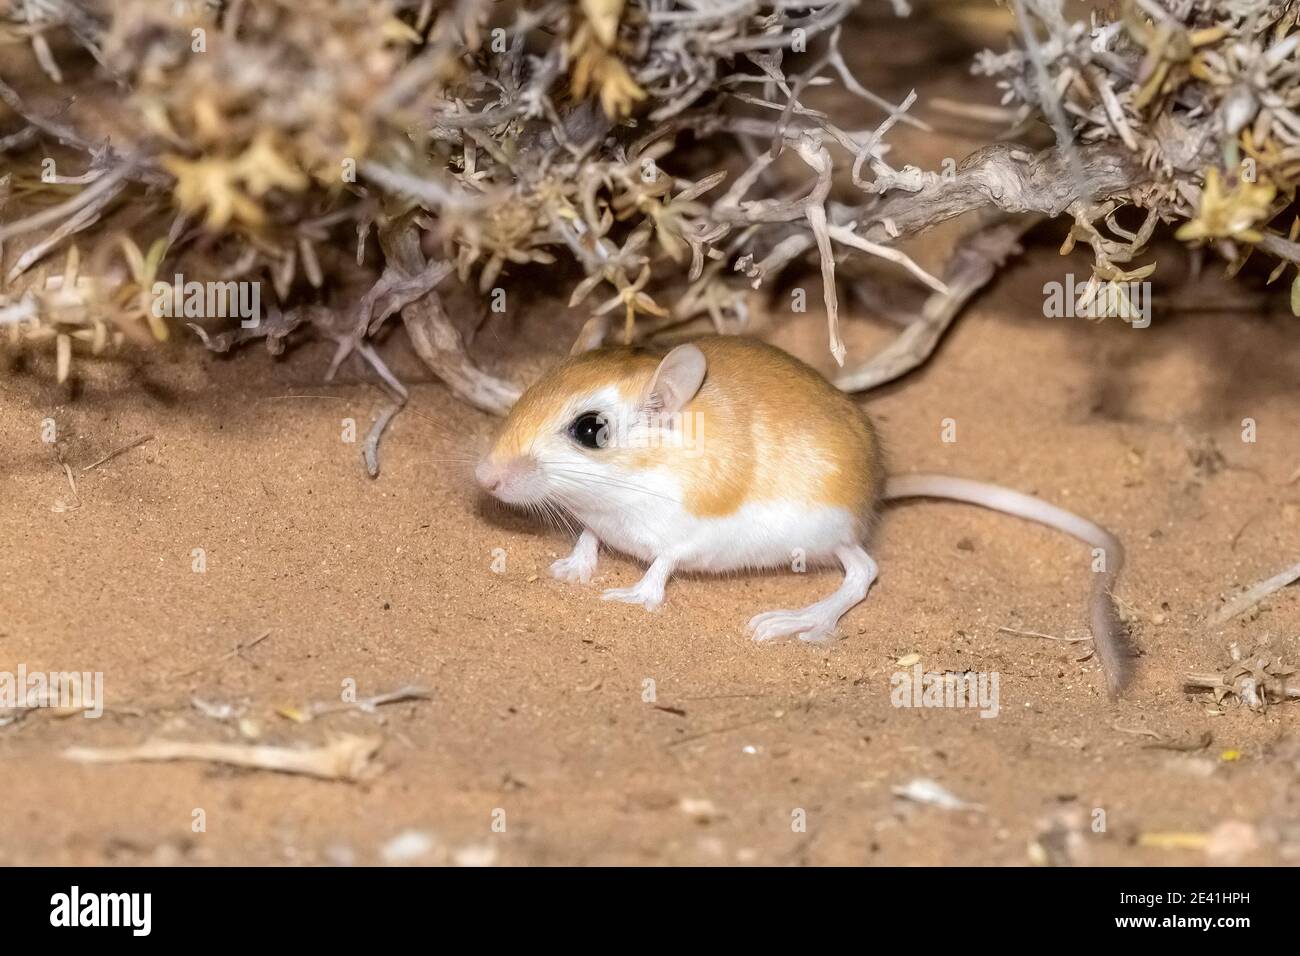 Kleine ägyptische Gerbil (Gerbillus gerbillus), sitzend in der Wüste auf sandigen Boden, Seitenansicht, Marokko, Westsahara, Oued Ed-Dahab, Imlili Stockfoto